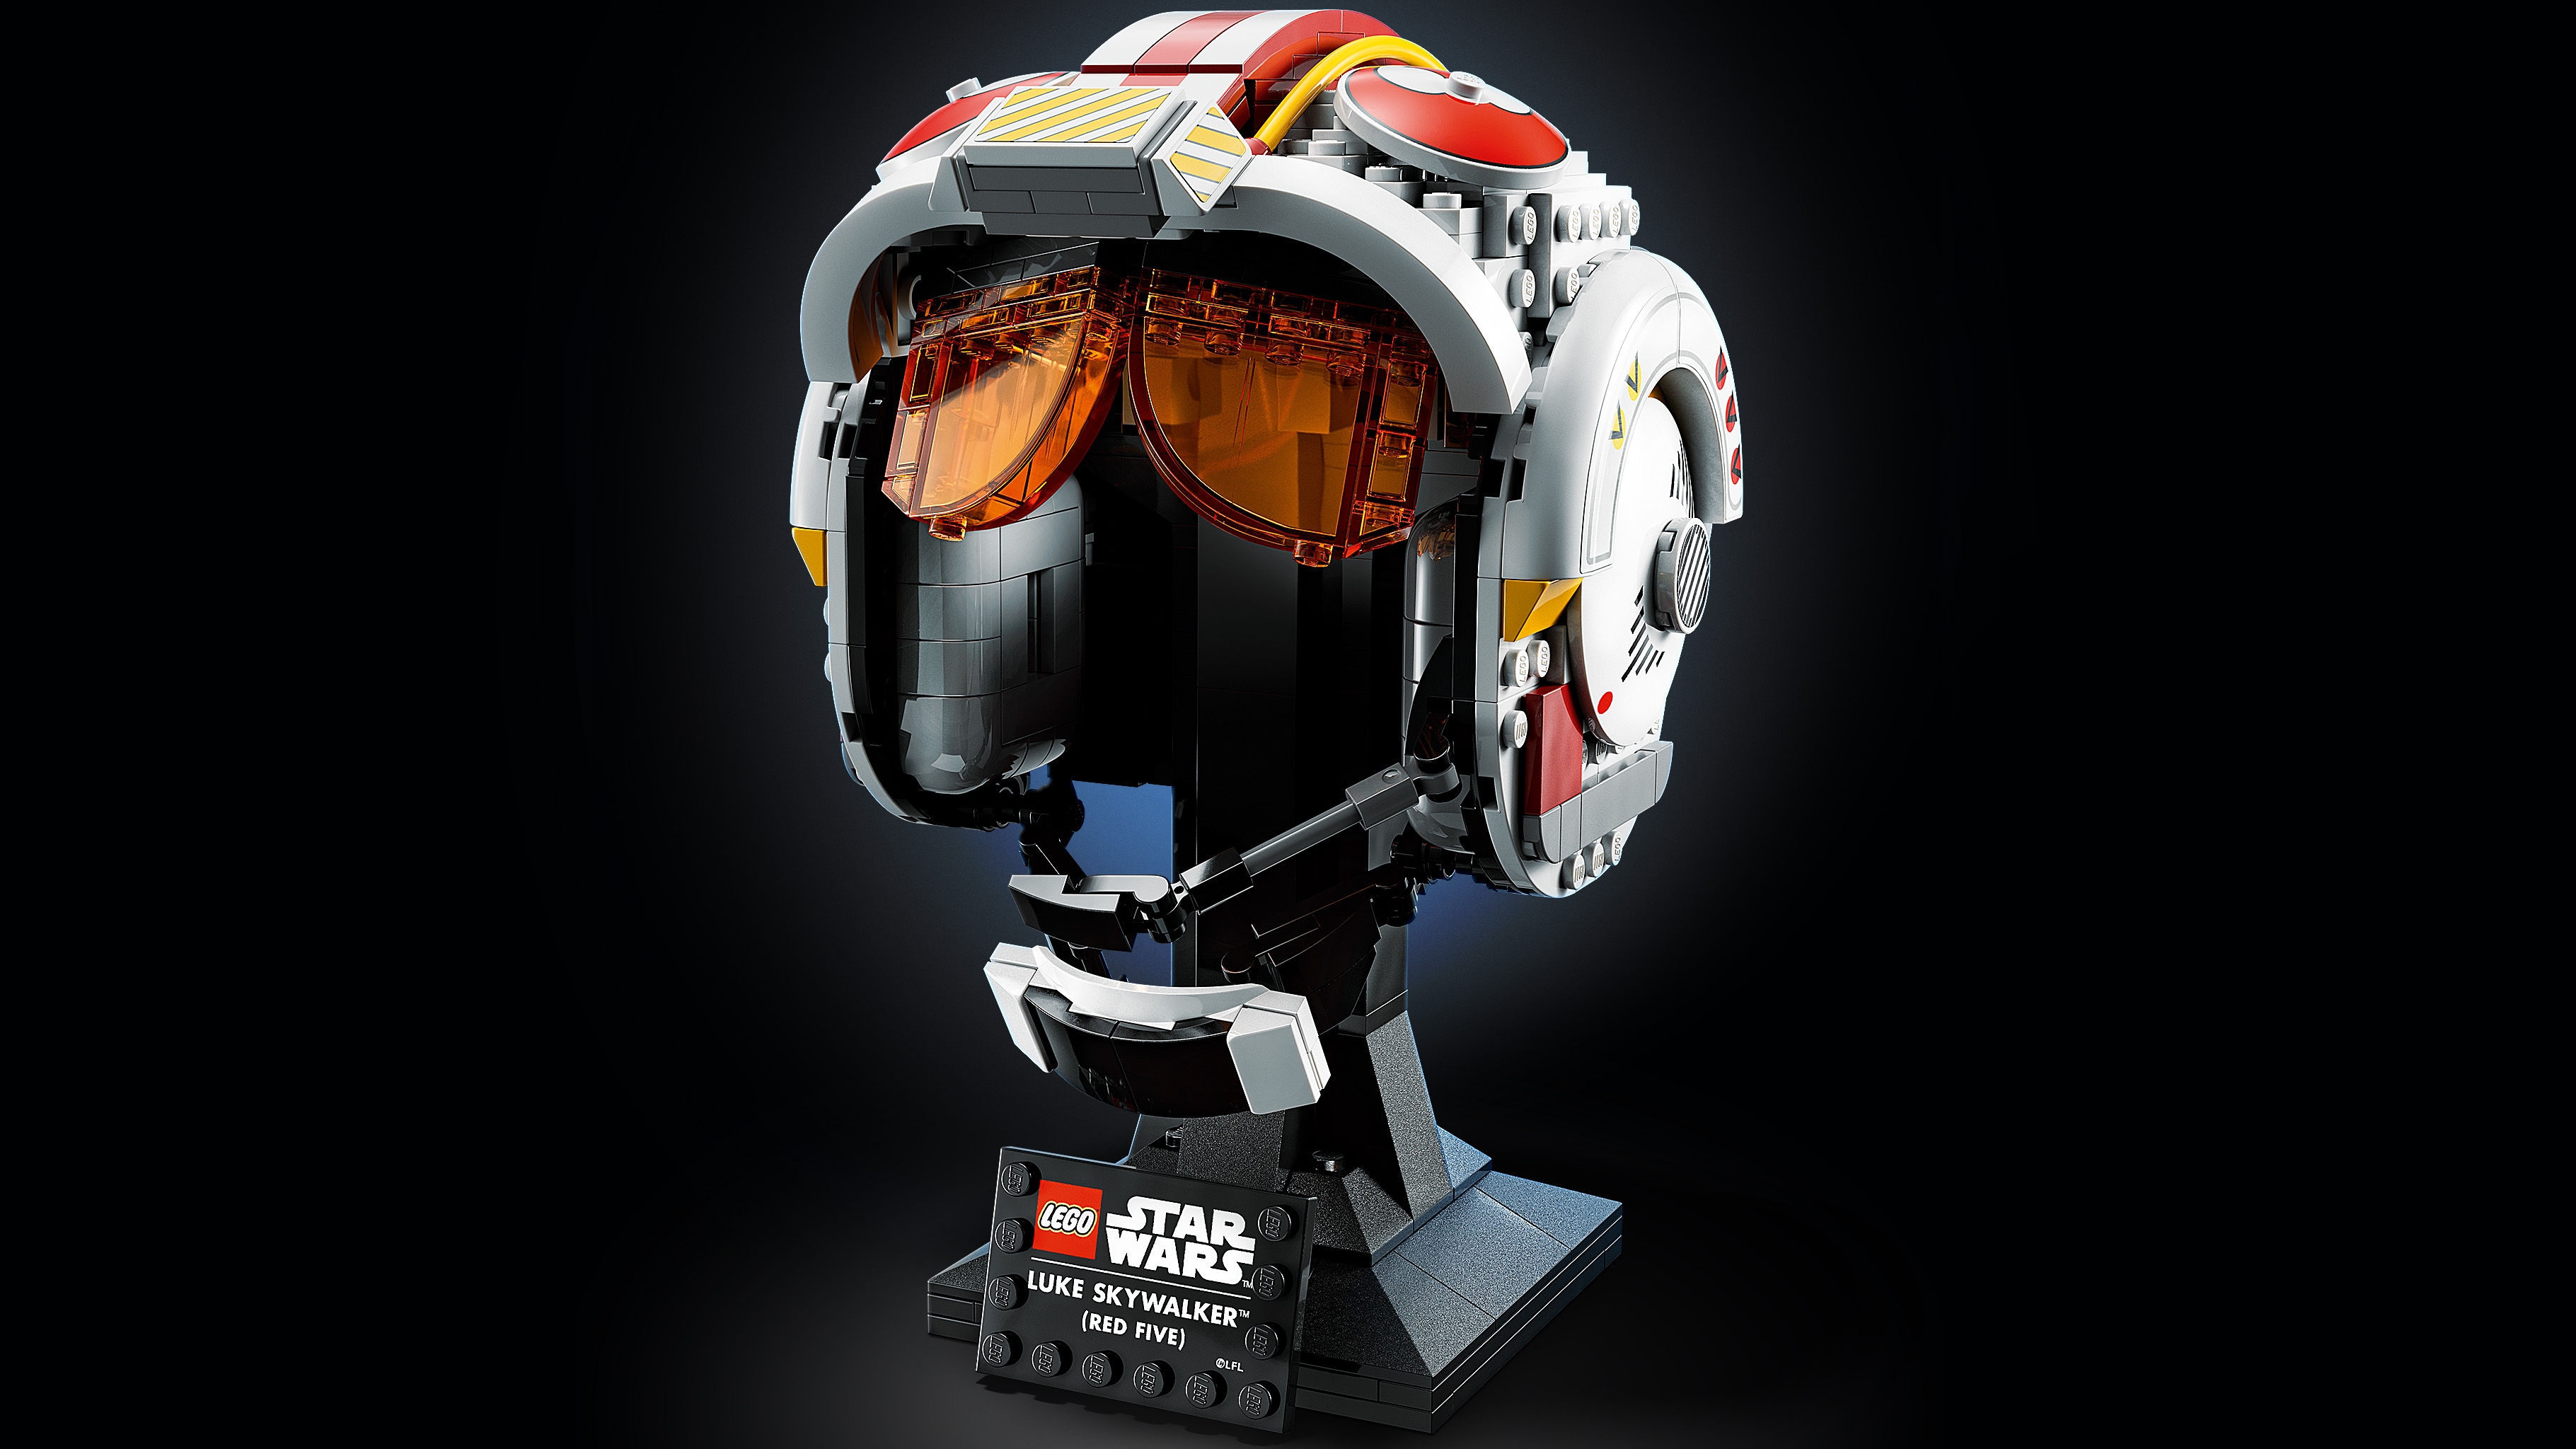 Luke Skywalker™ (Red Five) Helmet 75327, Star Wars™